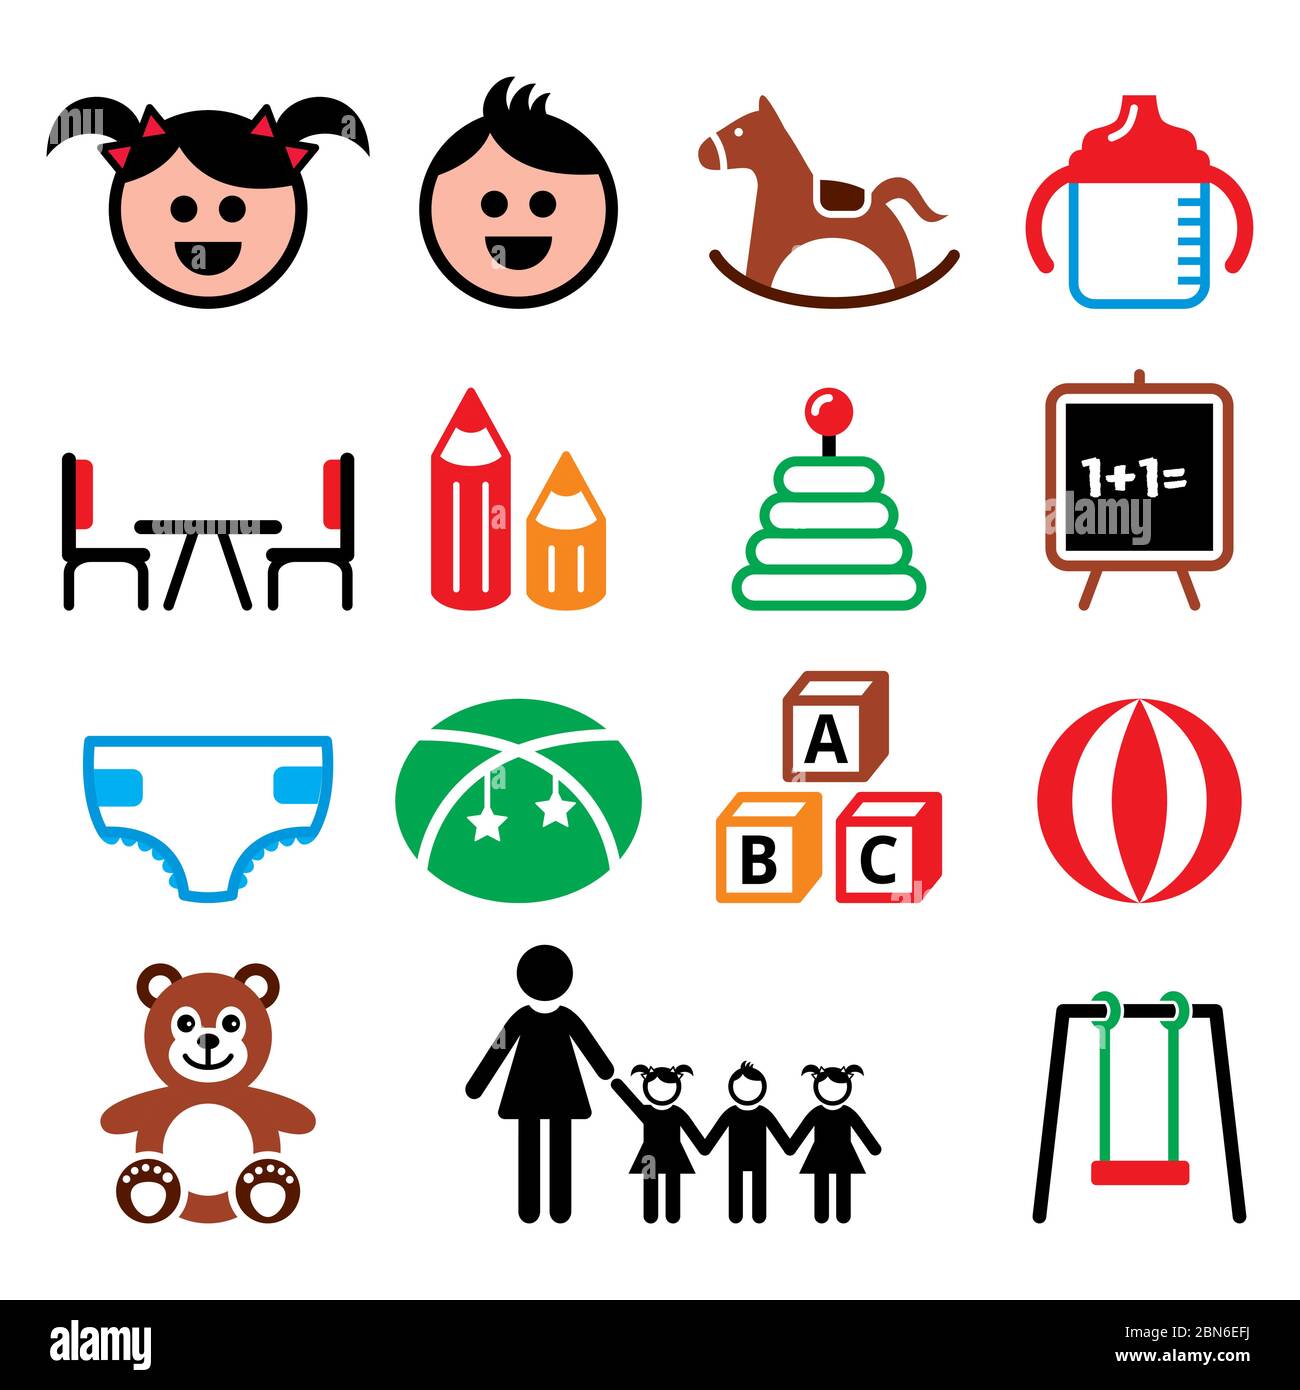 Kindergarten, nursery, preschool children color icons set    Babies and kids in creche or kindergarten vector icons set isolated on white Stock Vector